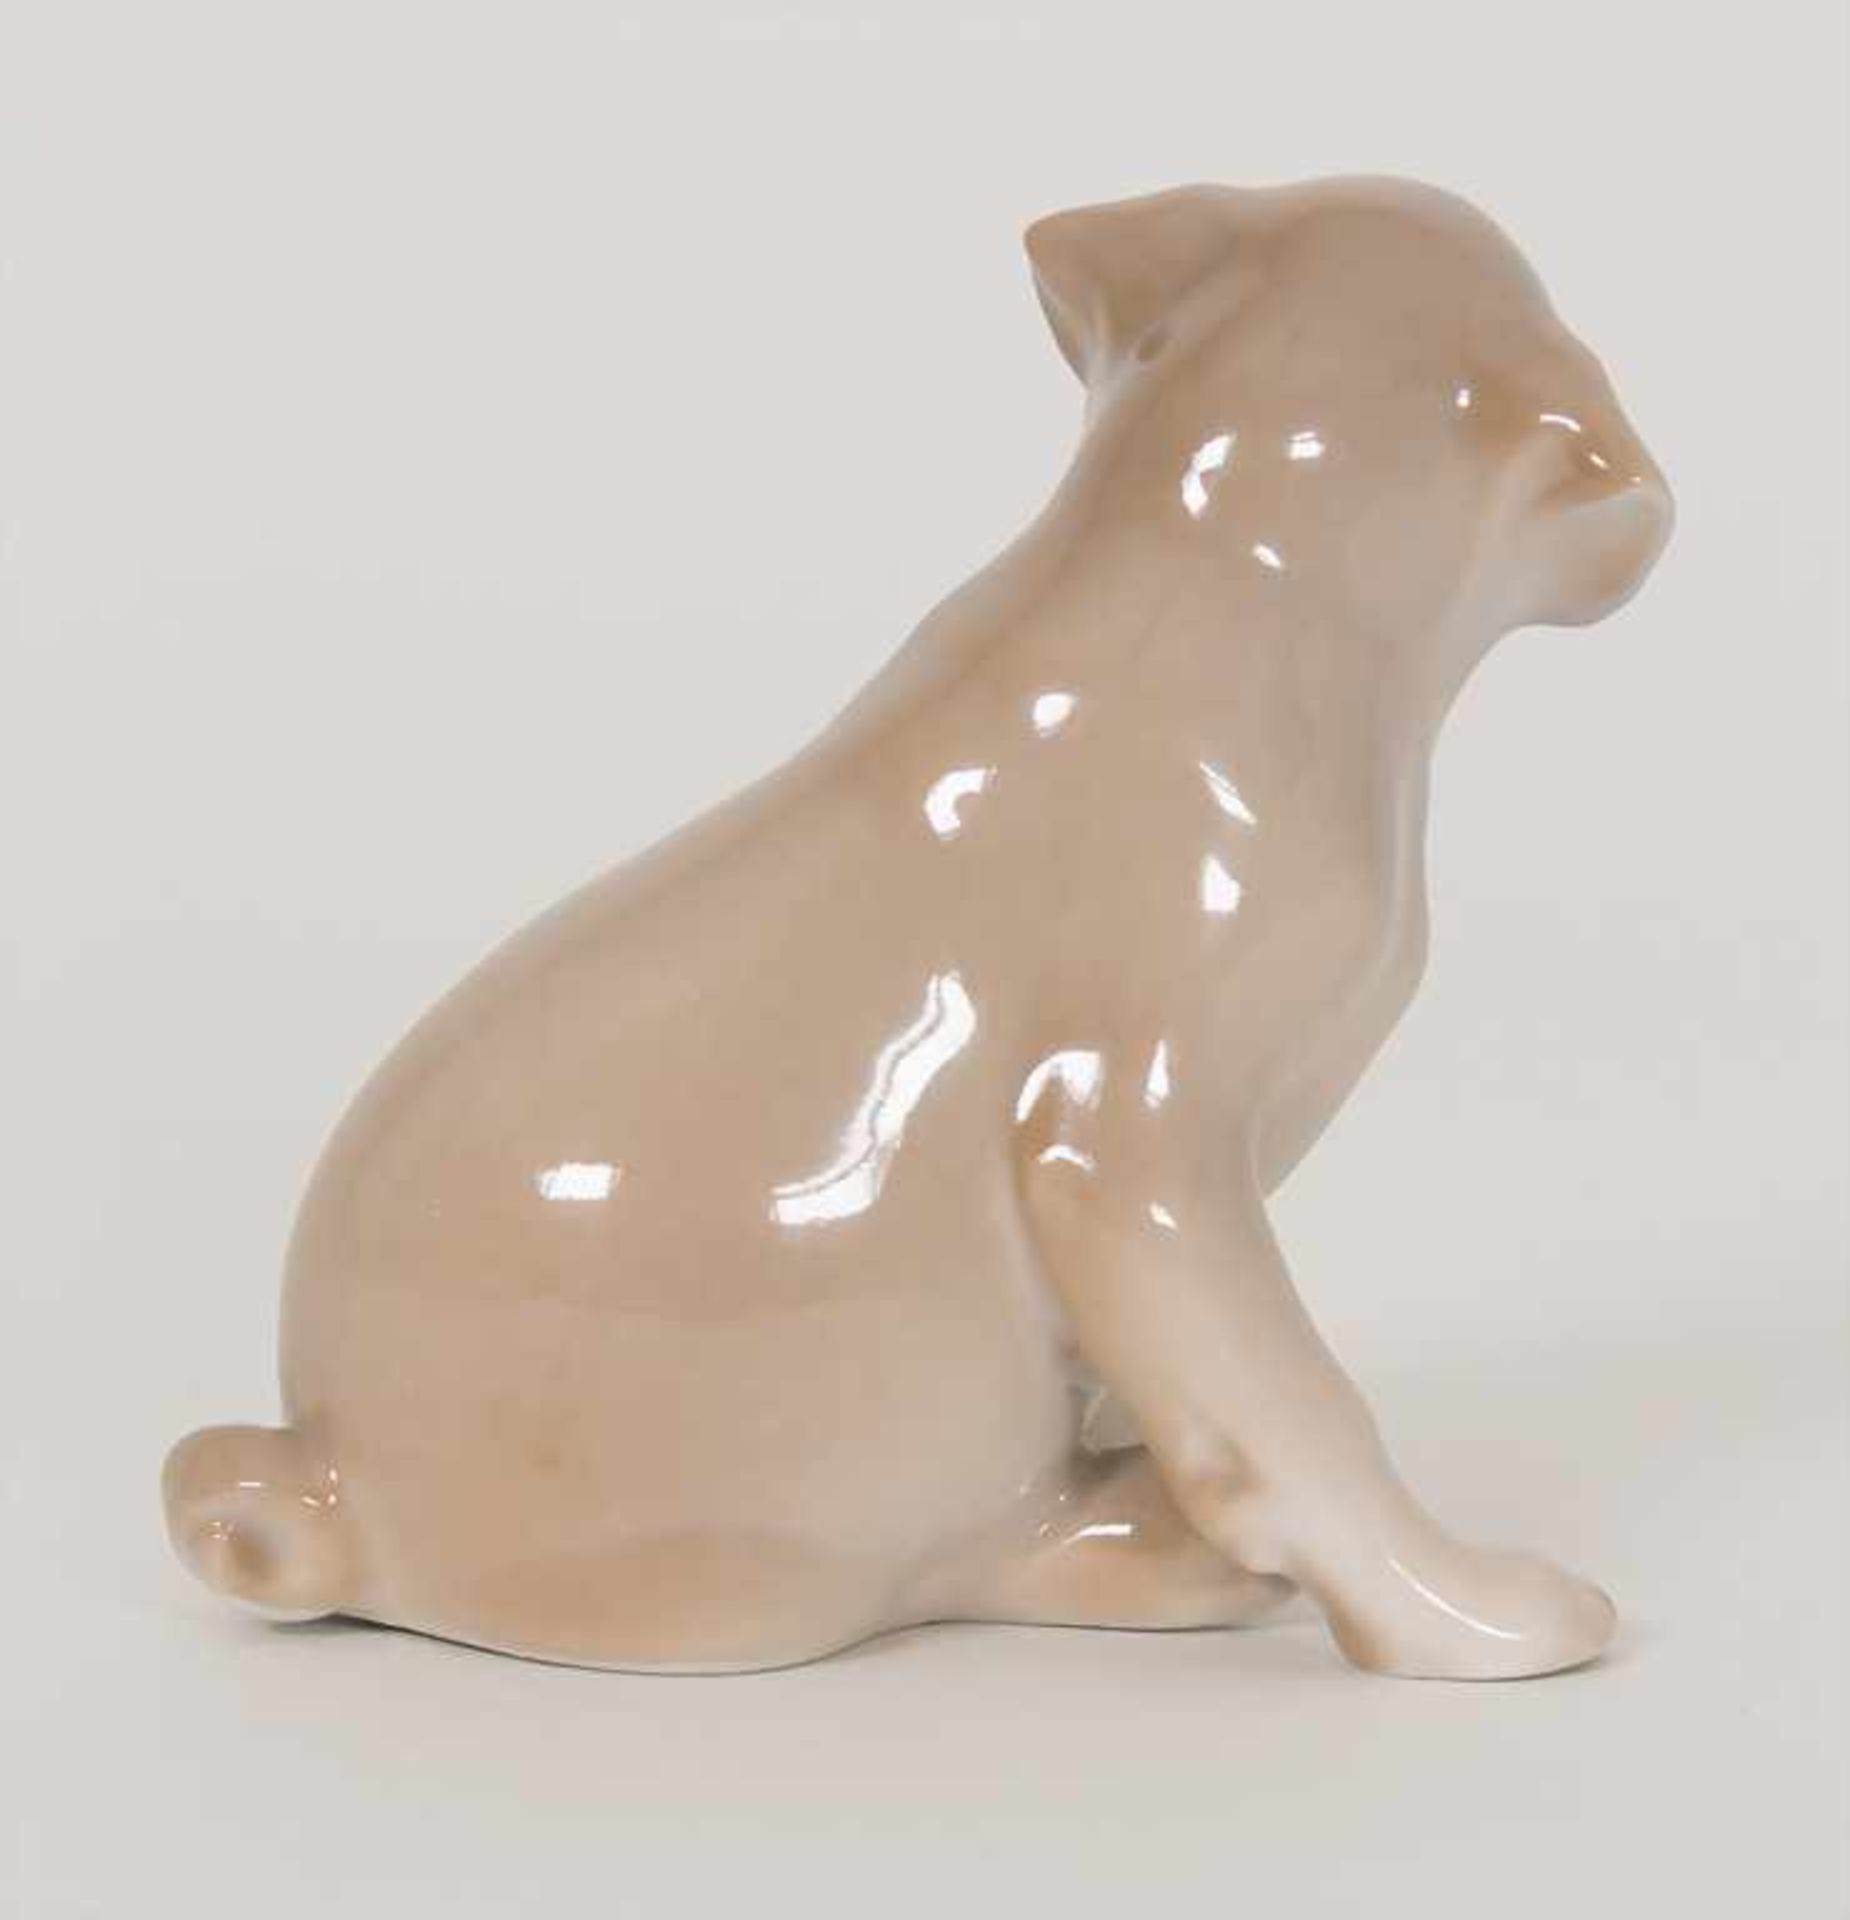 Mops Welpe / A pug puppy, Theodor Madsen, Royal Copenhagen, Mitte 20. Jh.Material: Porzellan, bemalt - Bild 2 aus 4